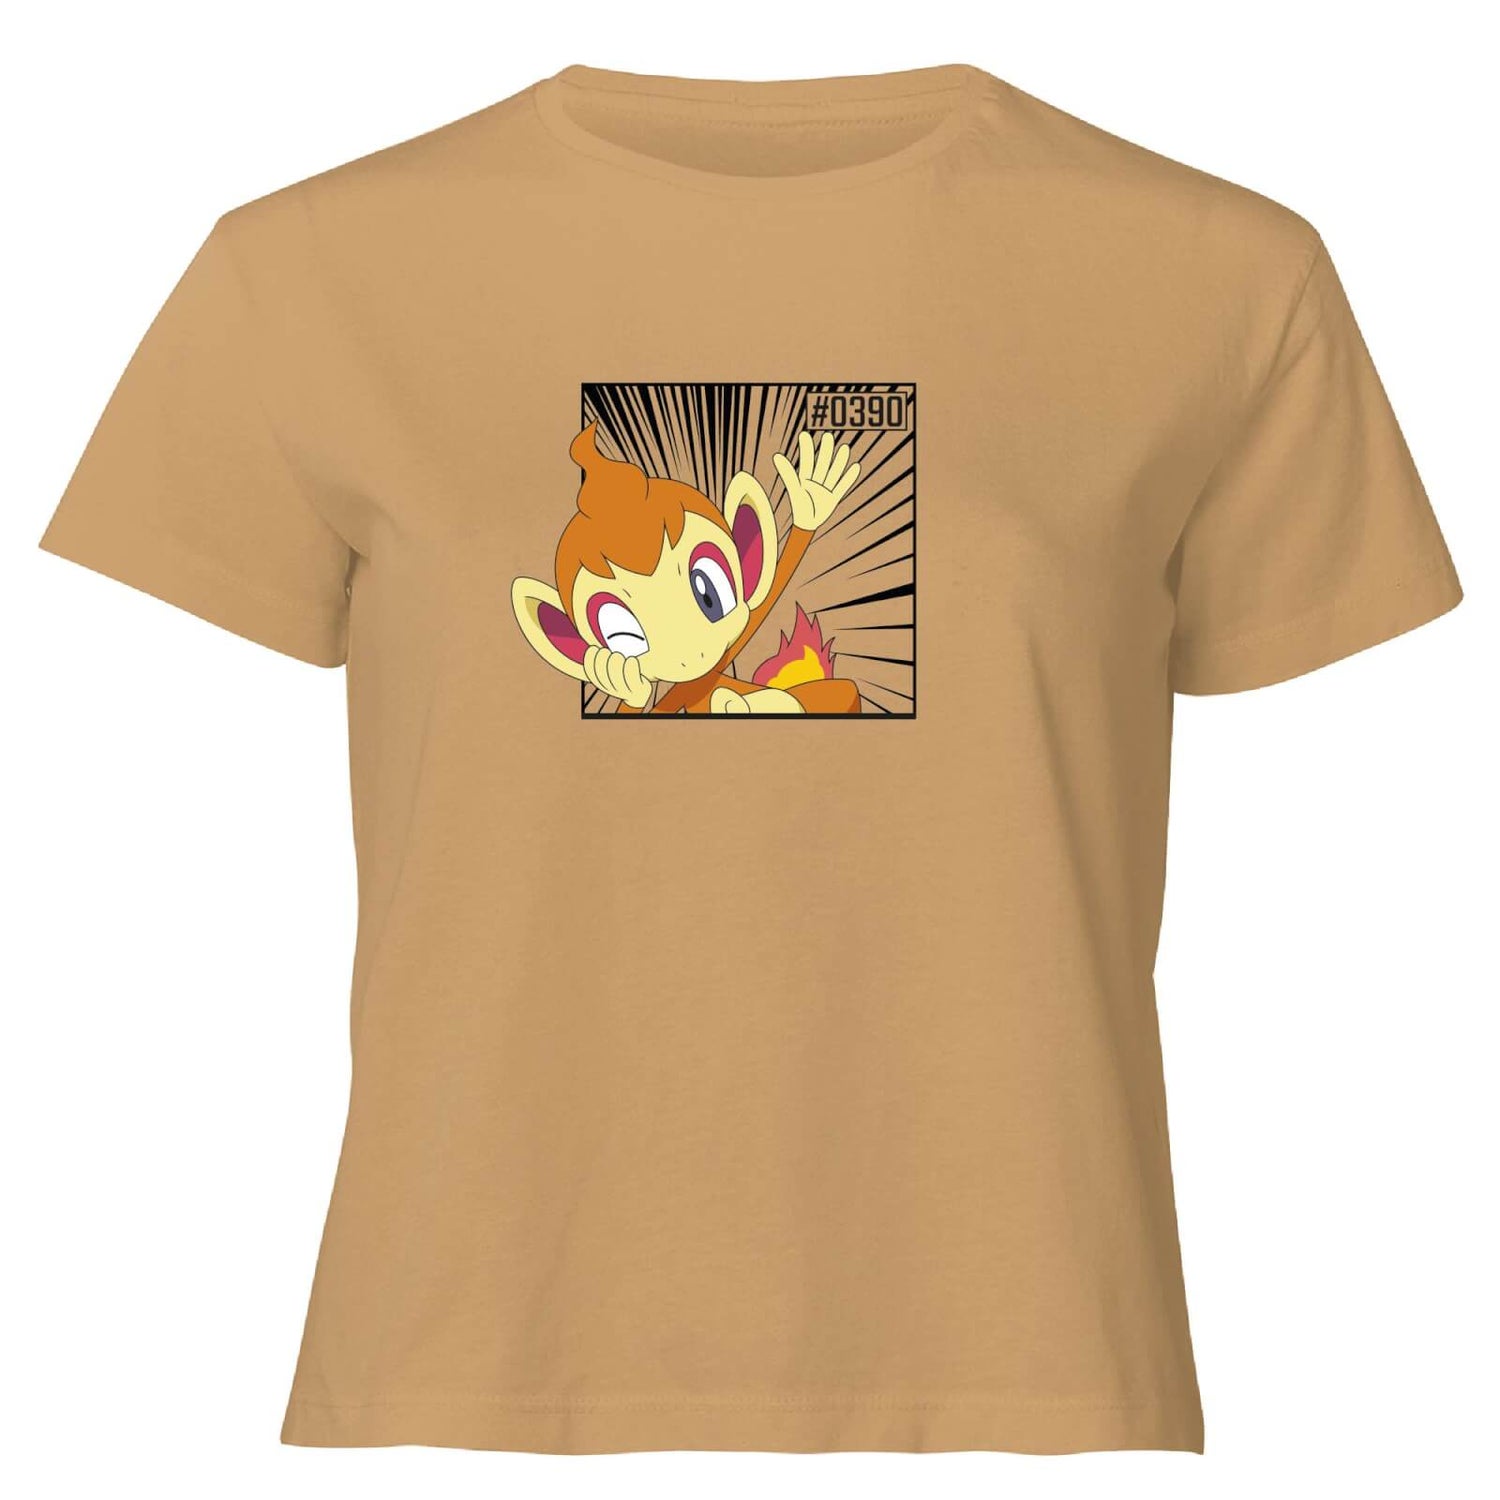 Pokemon Chimchar Women's Cropped T-Shirt - Tan